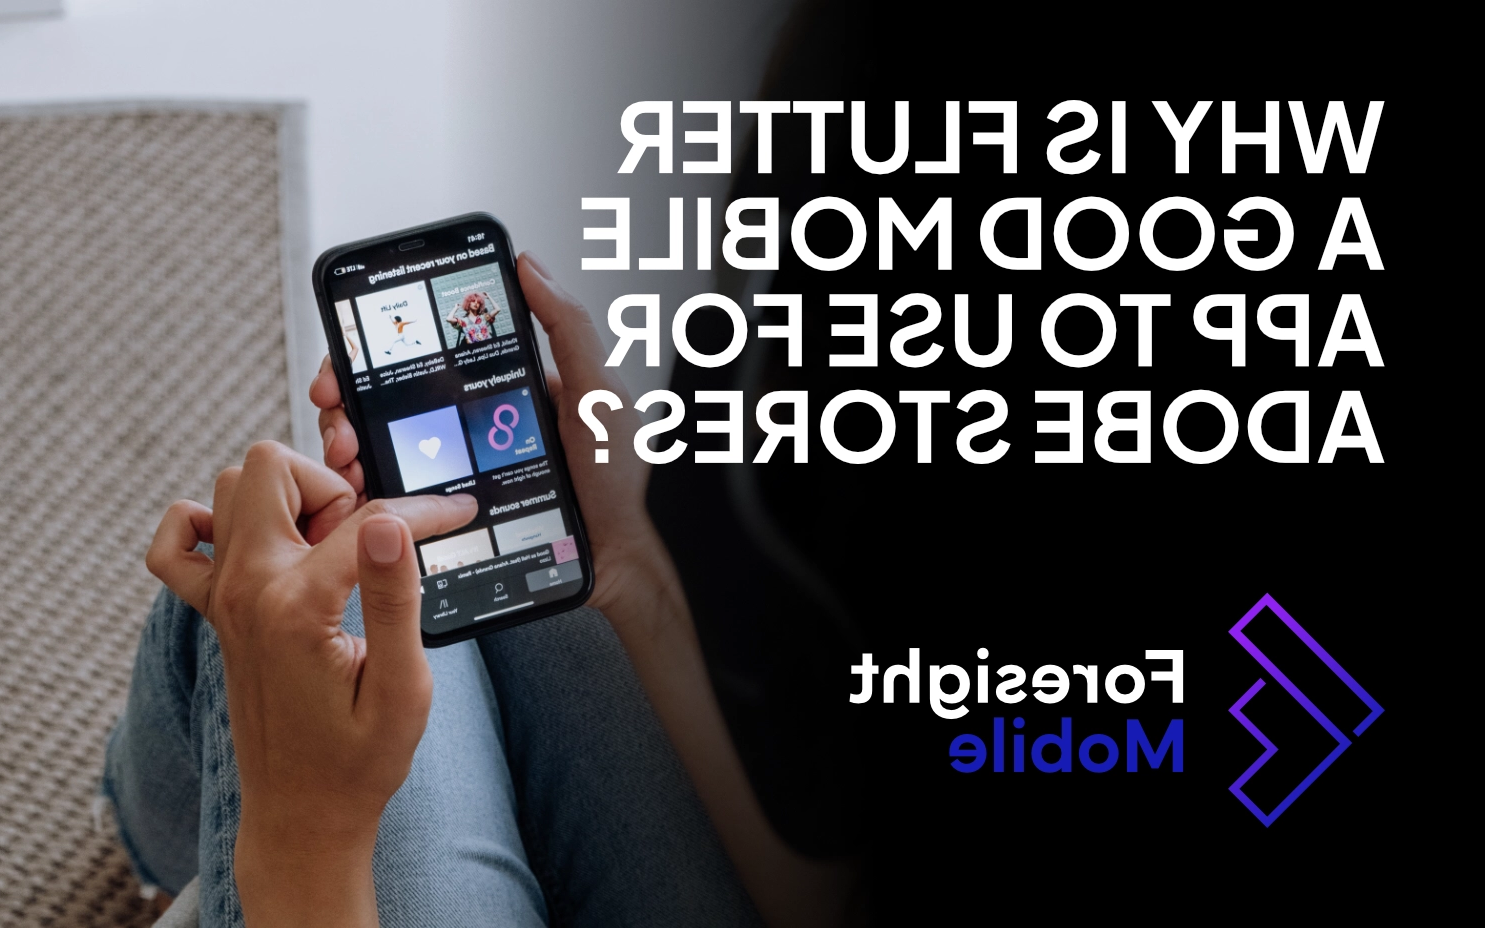 image of adobe e-commerce app | Foresight Mobile